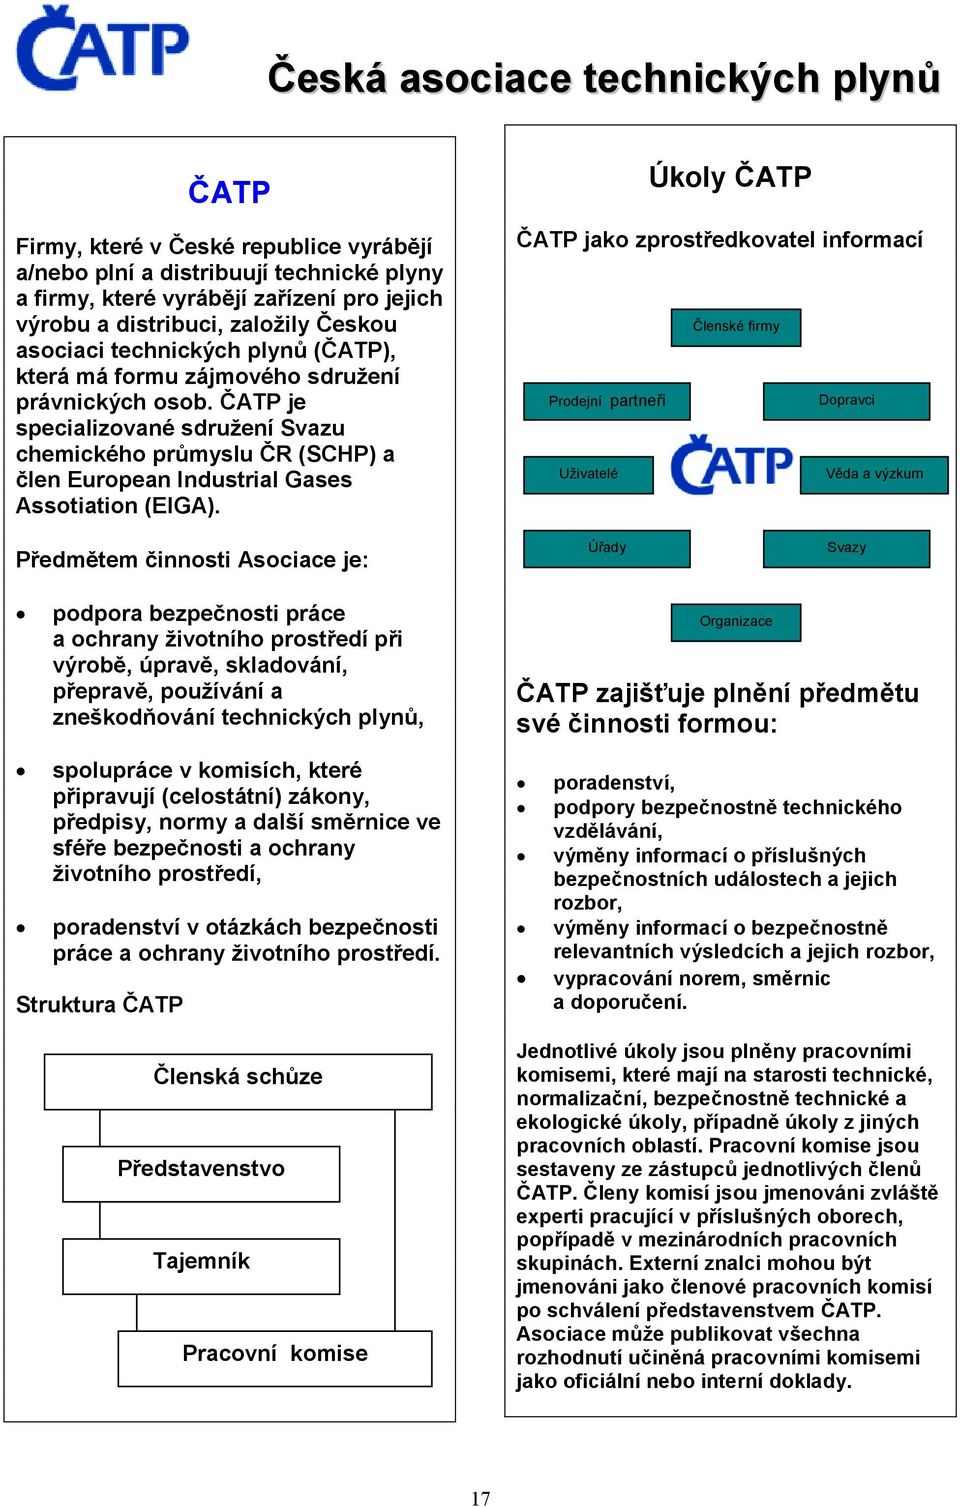 ČATP je specializované sdružení Svazu chemického průmyslu ČR (SCHP) a člen European Industrial Gases Assotiation (EIGA).